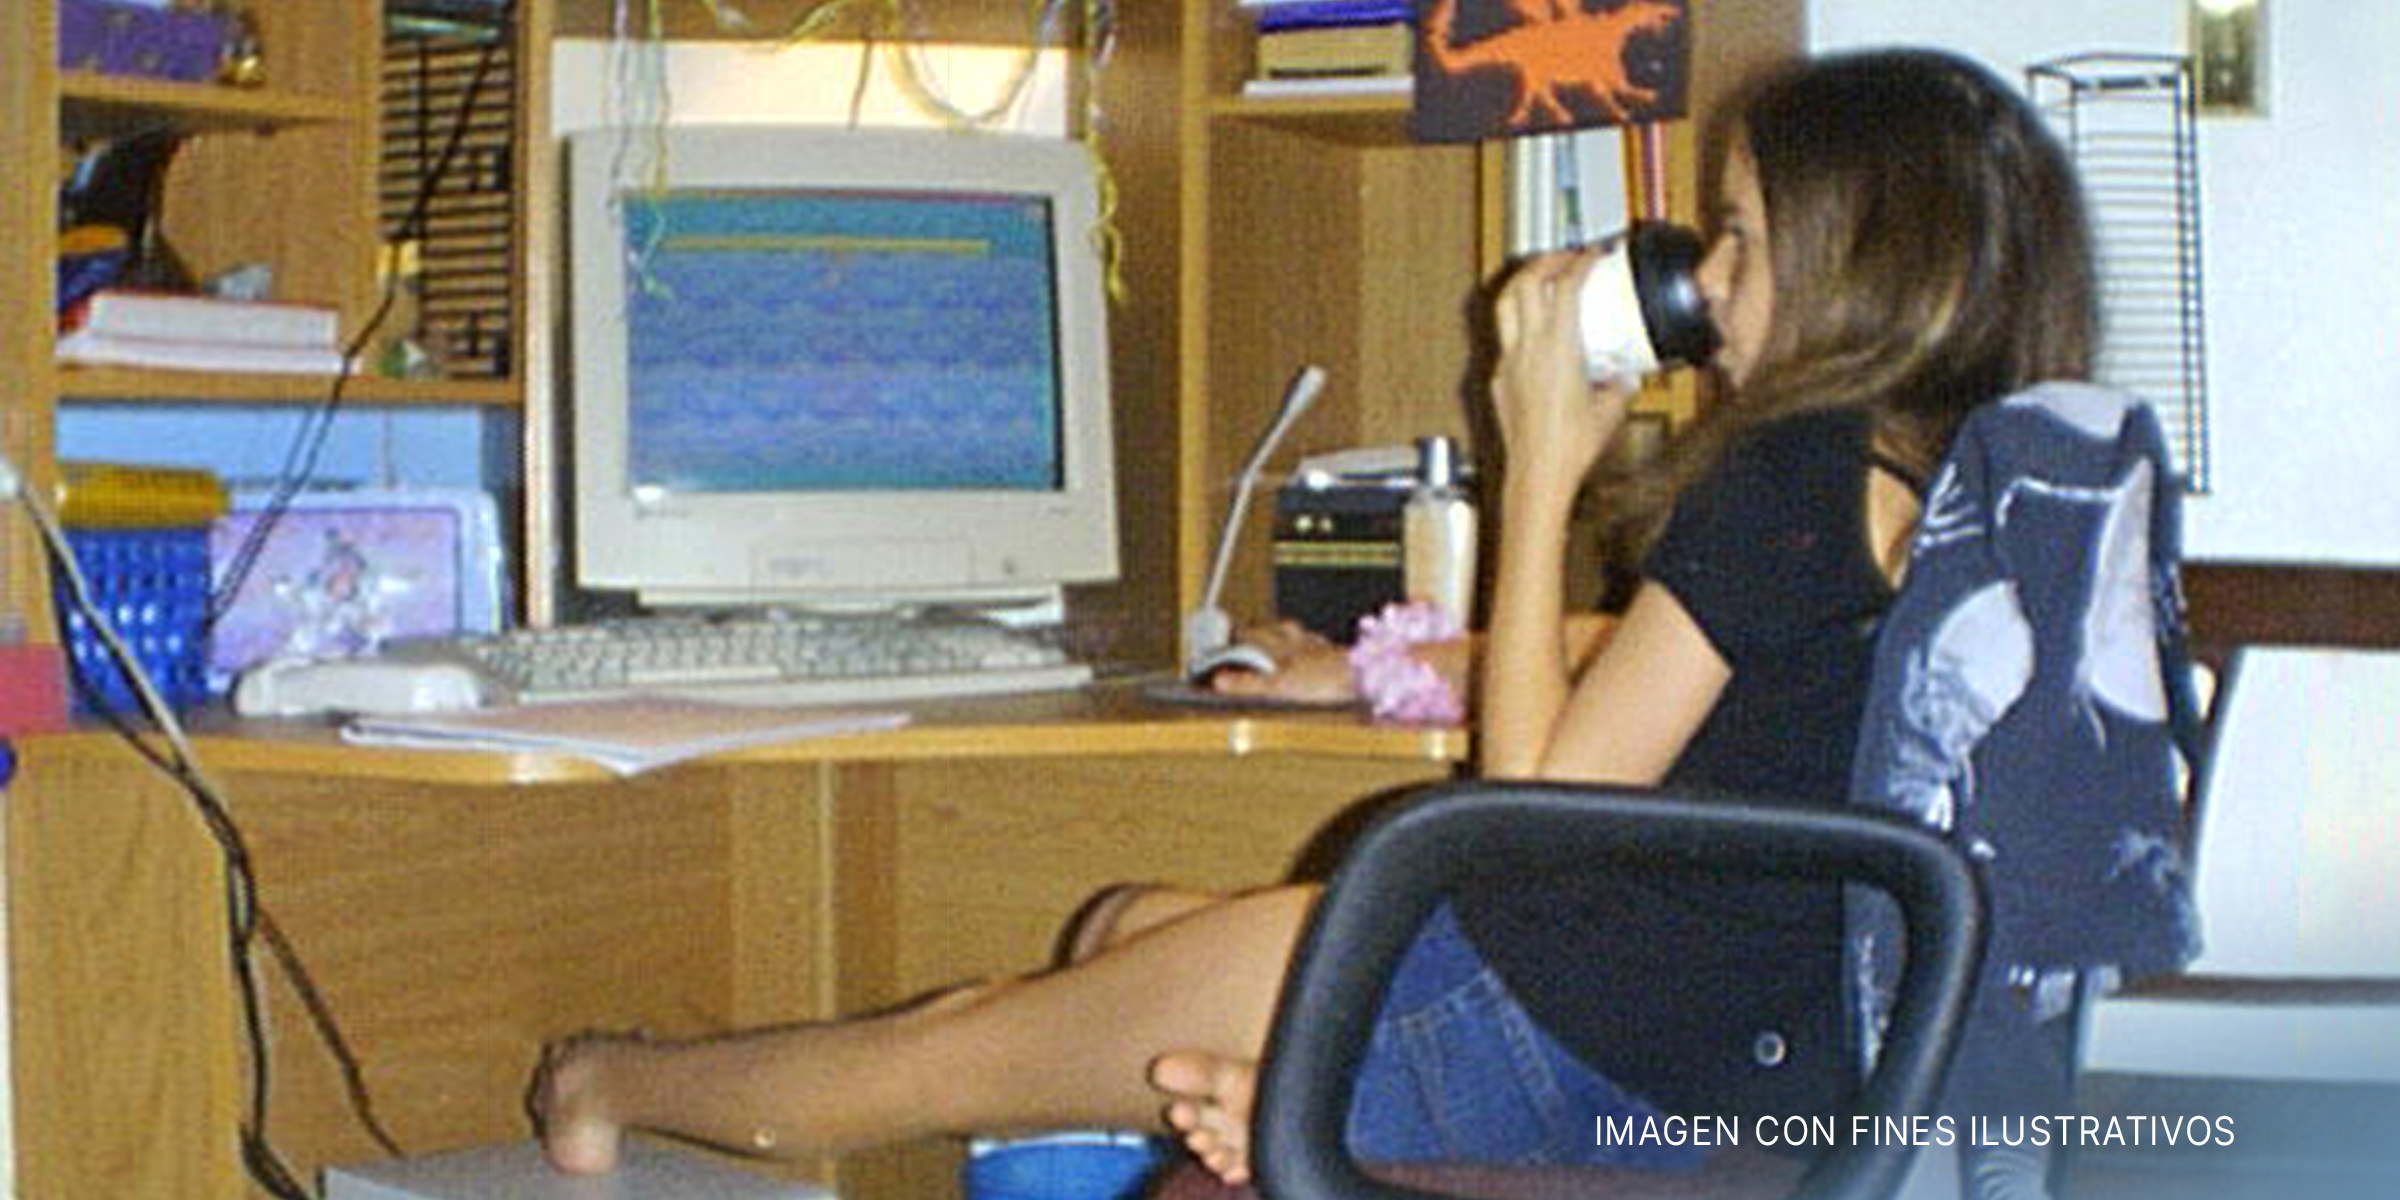 Adolescente frente al ordenador | Foto: Flickr.com/lunawhimsy (CC BY 2.0)